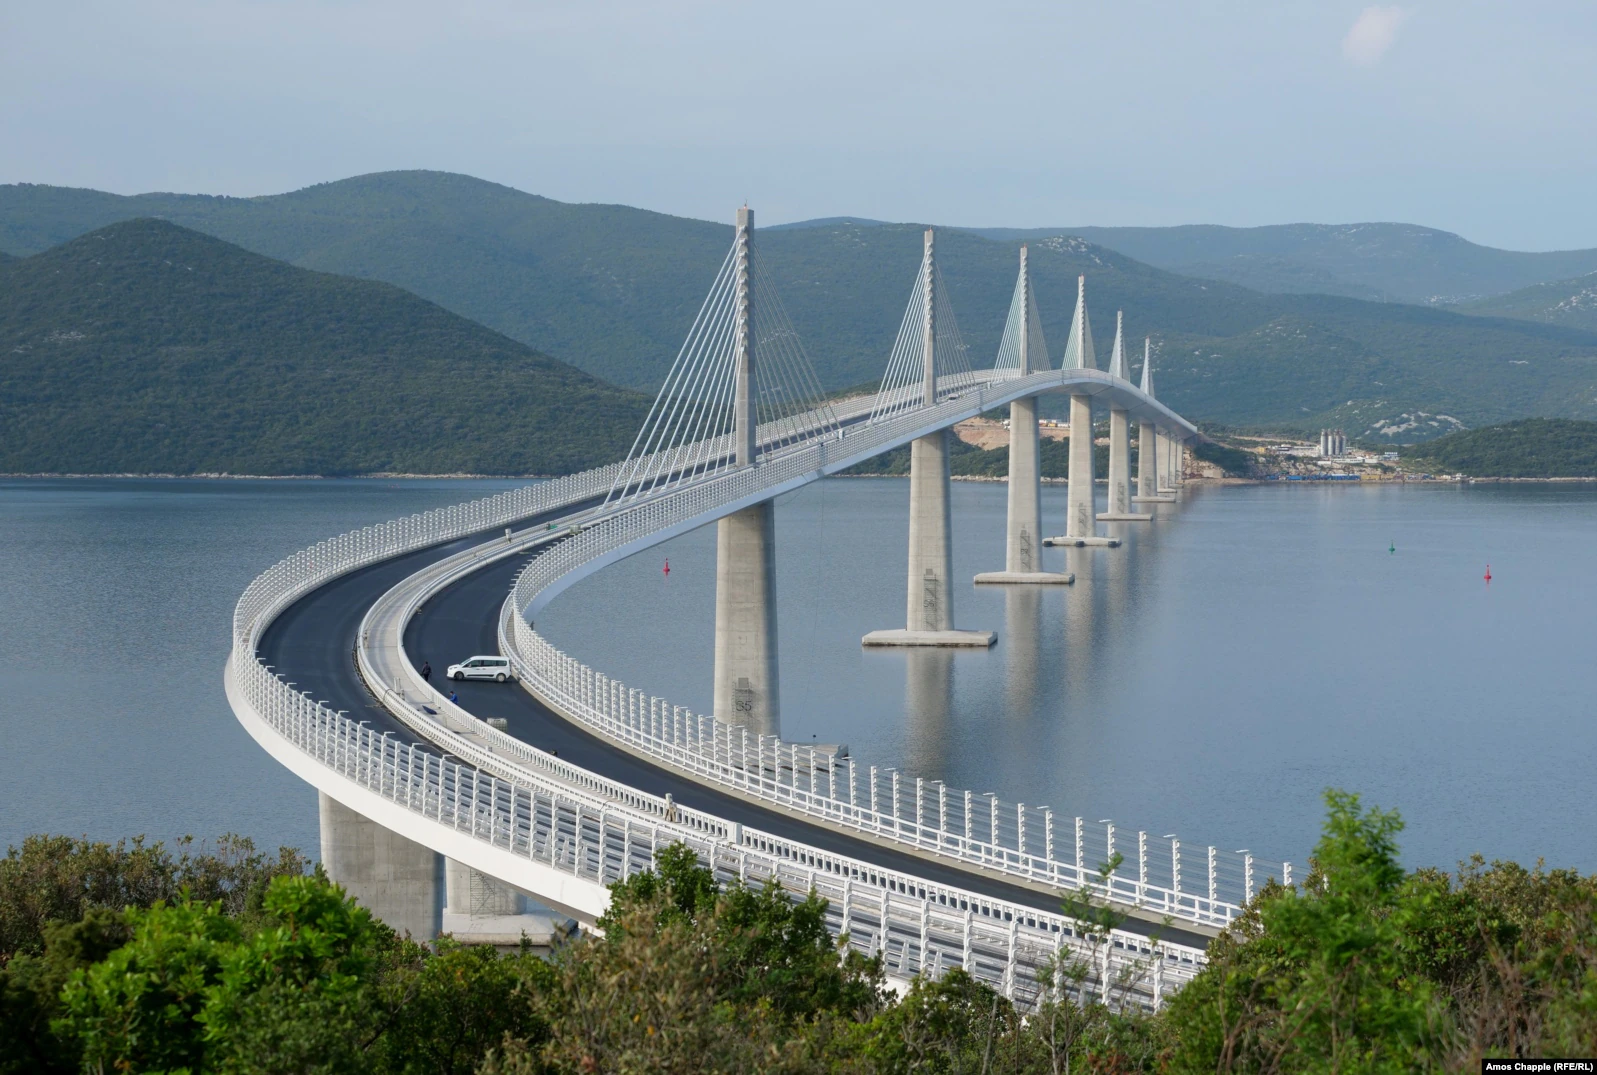  Ura që do të transformojë udhëtimin në Ballkan